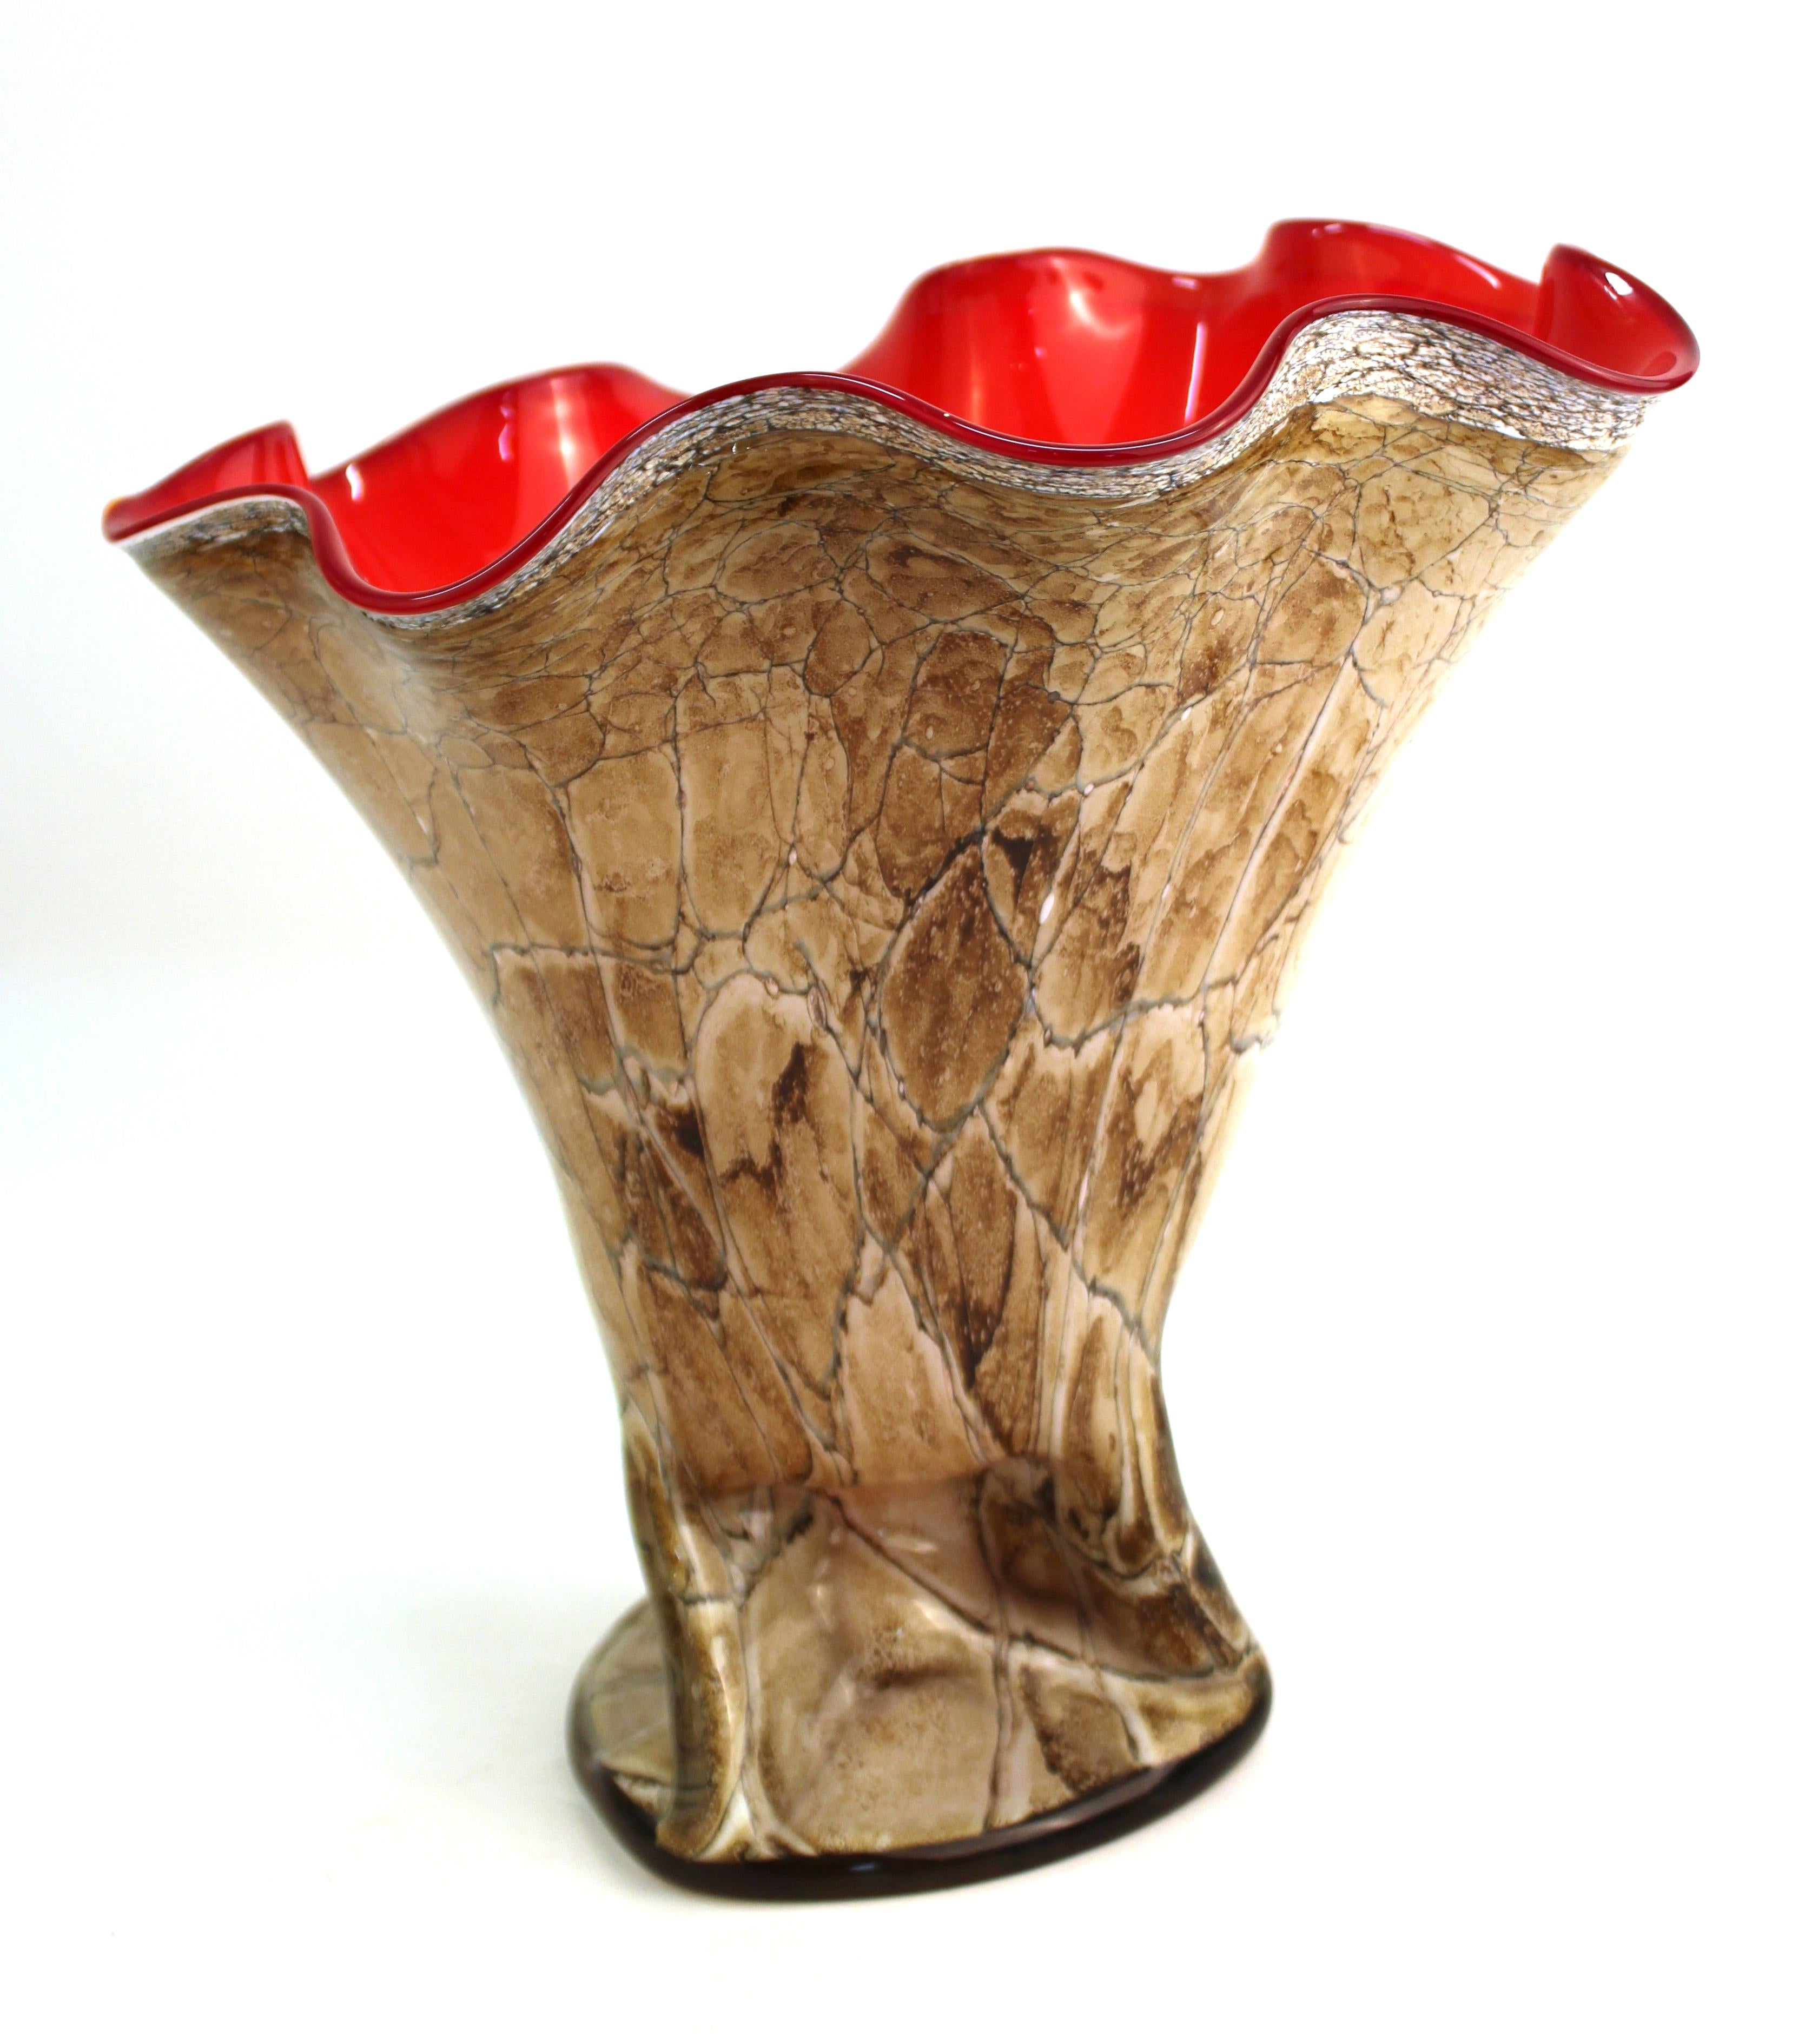 Post-Modern Italian Modern Art Glass Handkerchief Bowl or Vase